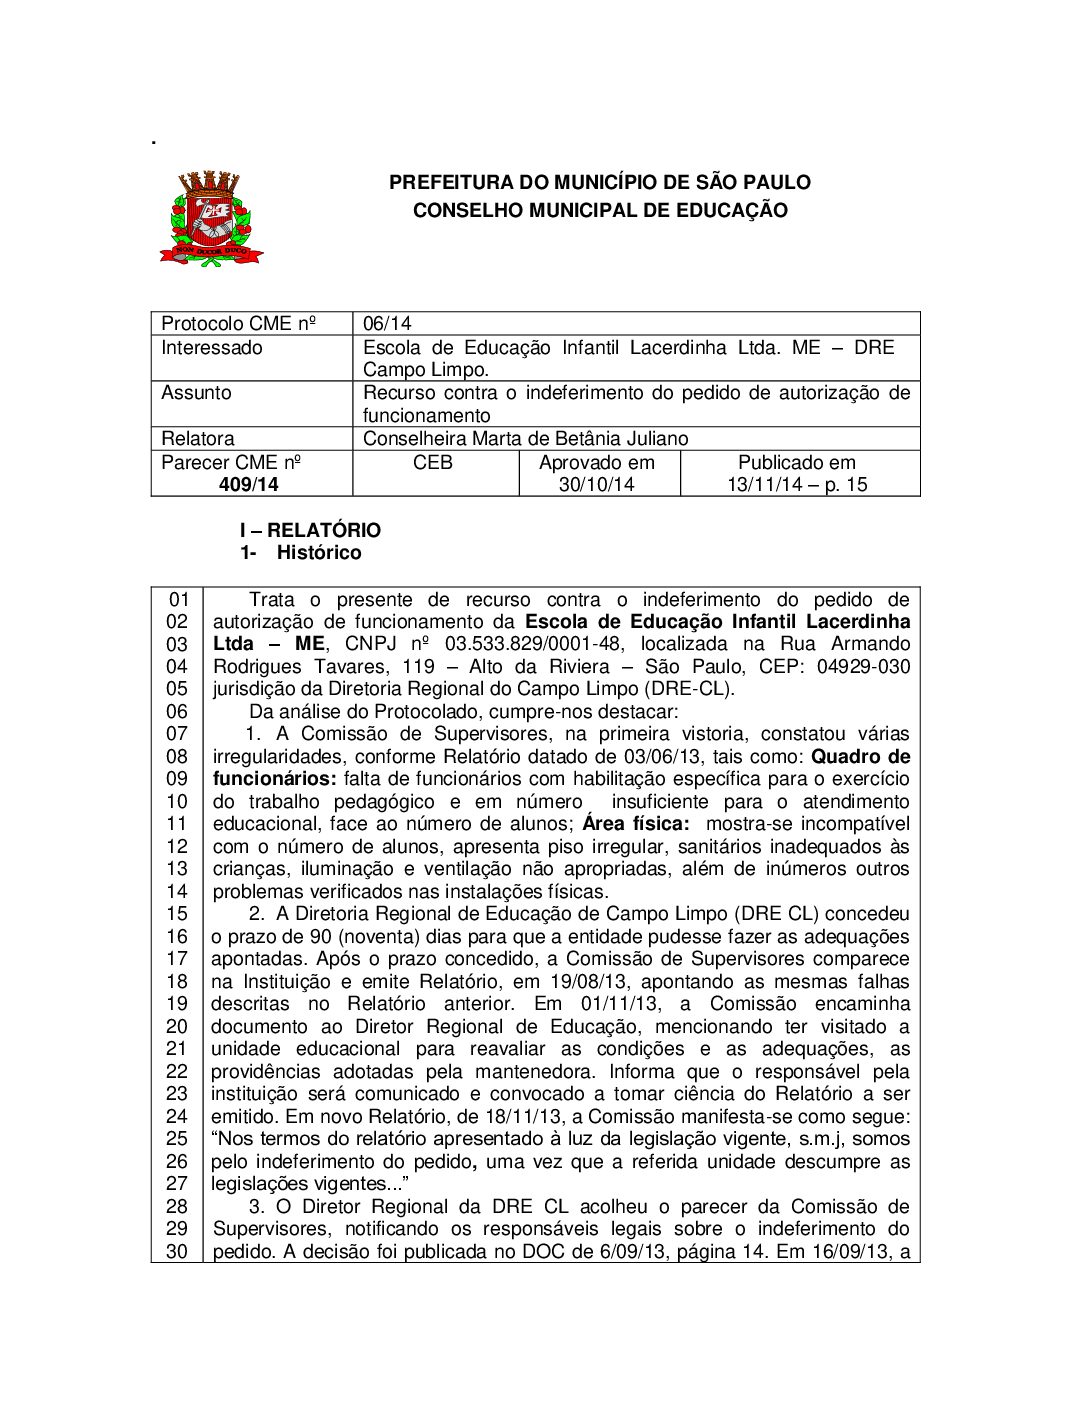 Parecer CME nº 409/2014 - Escola de Educação Infantil Lacerdinha Ltda ME (DRE Campo Limpo) - Recurso contra o indeferimento do pedido de autorização de funcionamento 